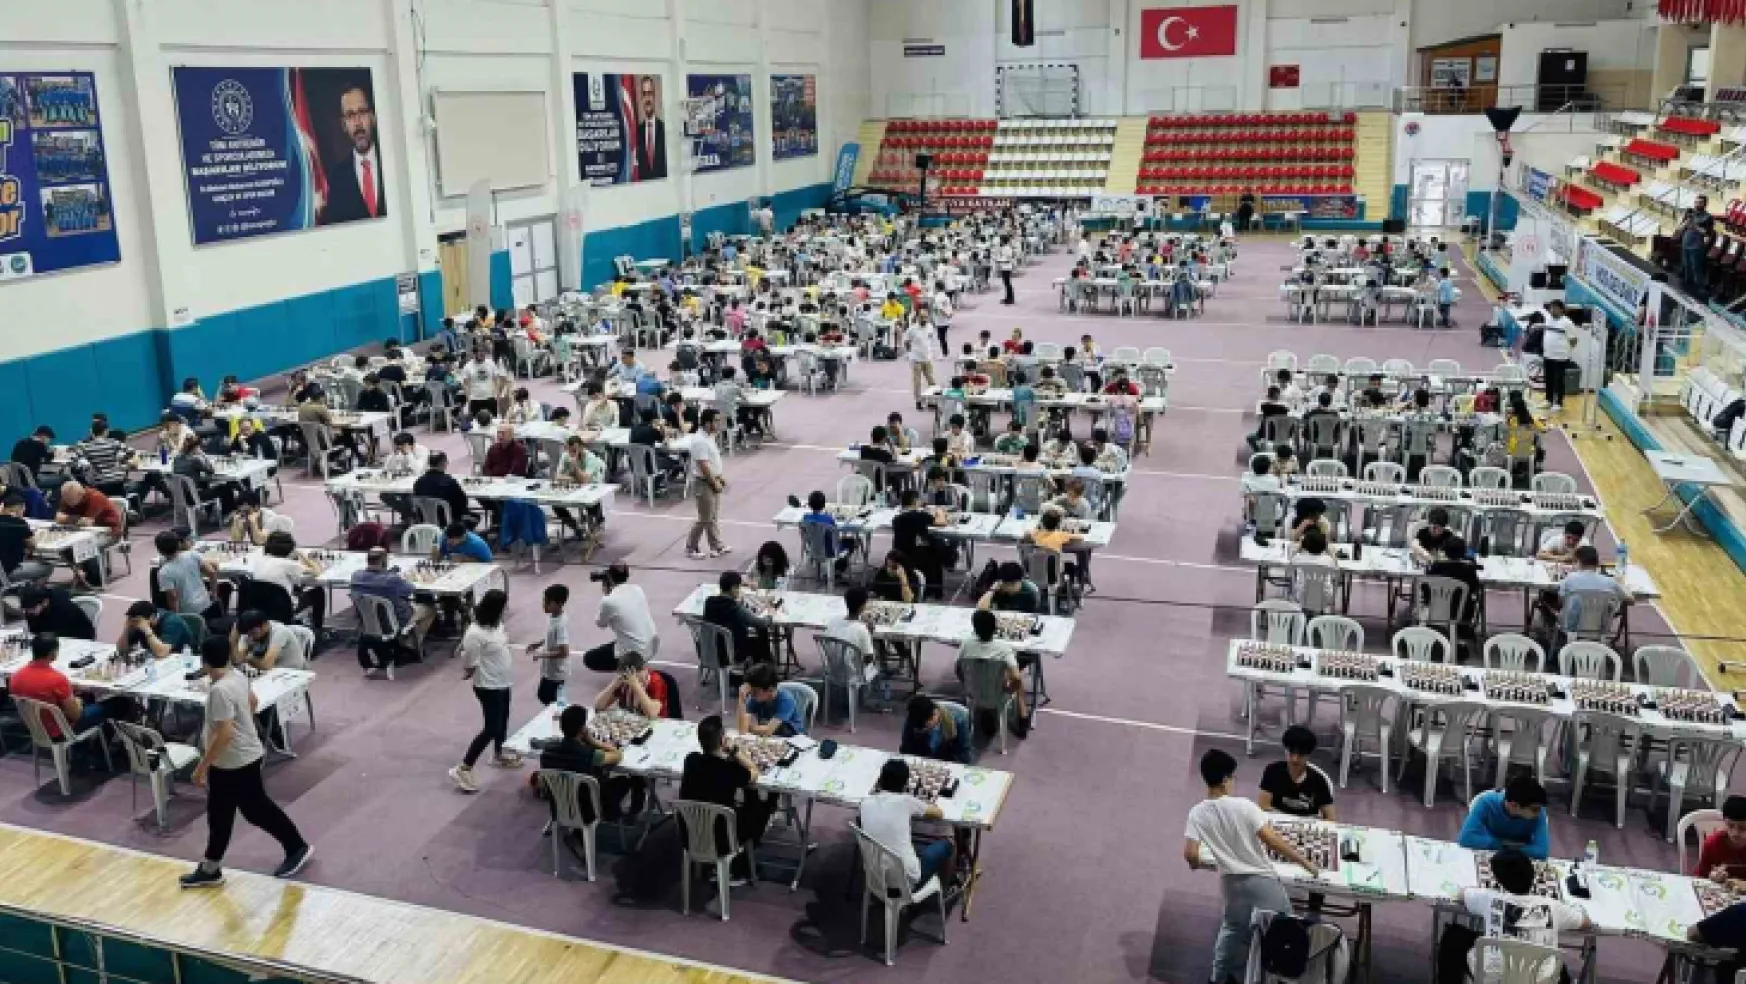 Kocaeli'ye gelen sporcular satranç turnuvasında ter döküyor